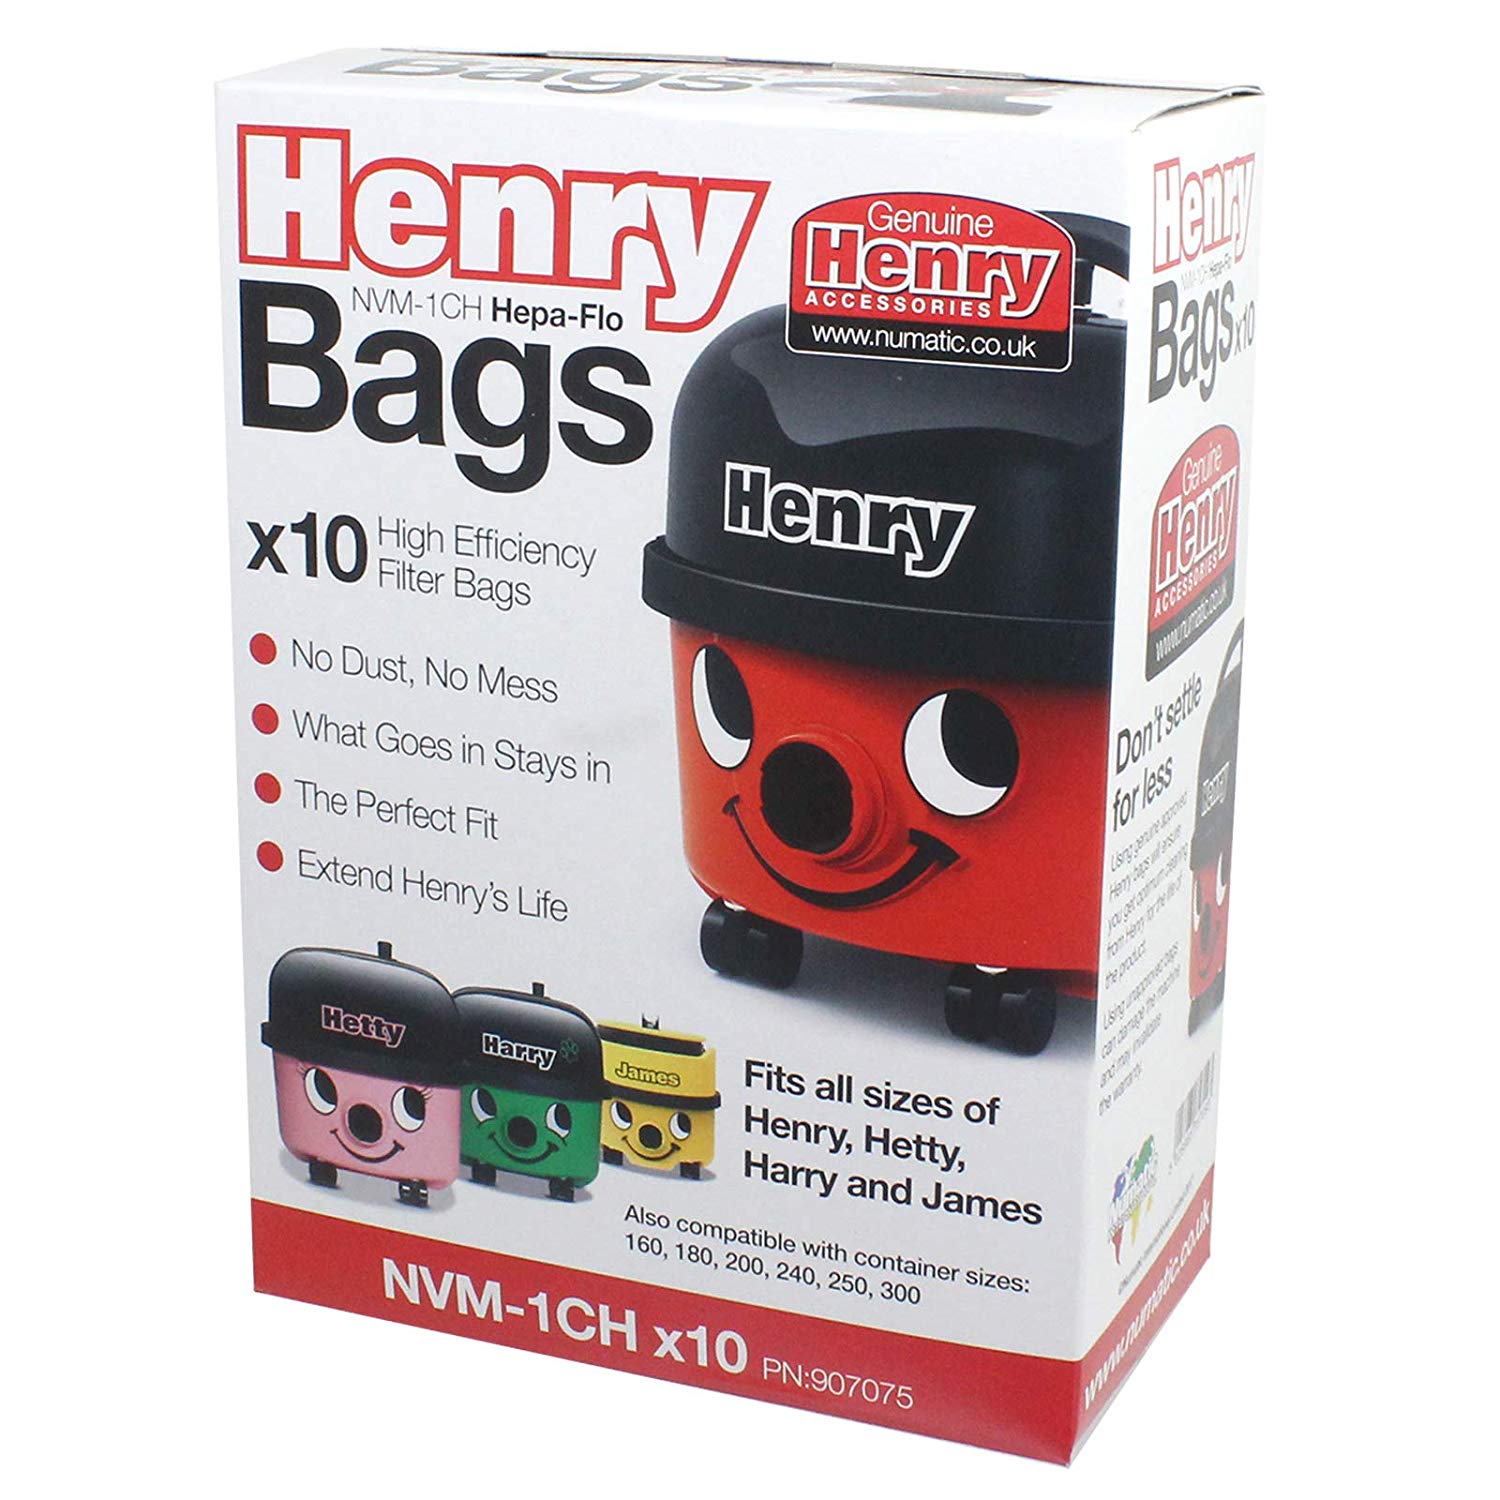 Numatic HENRY HETTY Vacuum Cleaner Hepa-Flo Dust Bags Genuine NVM-1CH 604015 907075 (Pack of 30 Bags)